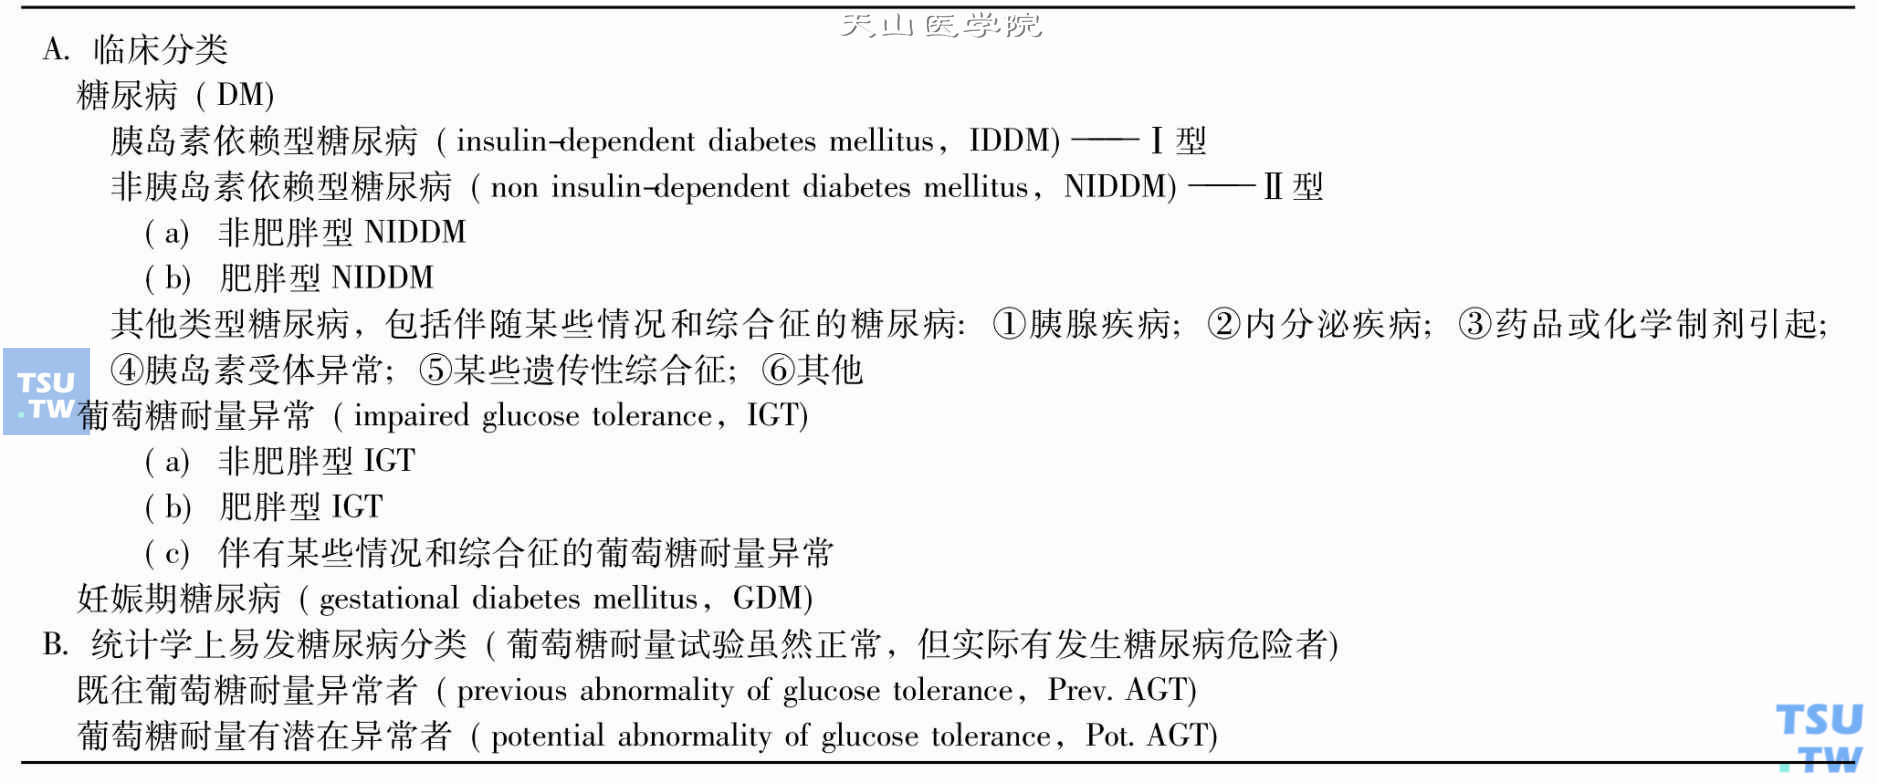 HO（1980年）糖尿病分型及其他葡萄糖耐量异常类型